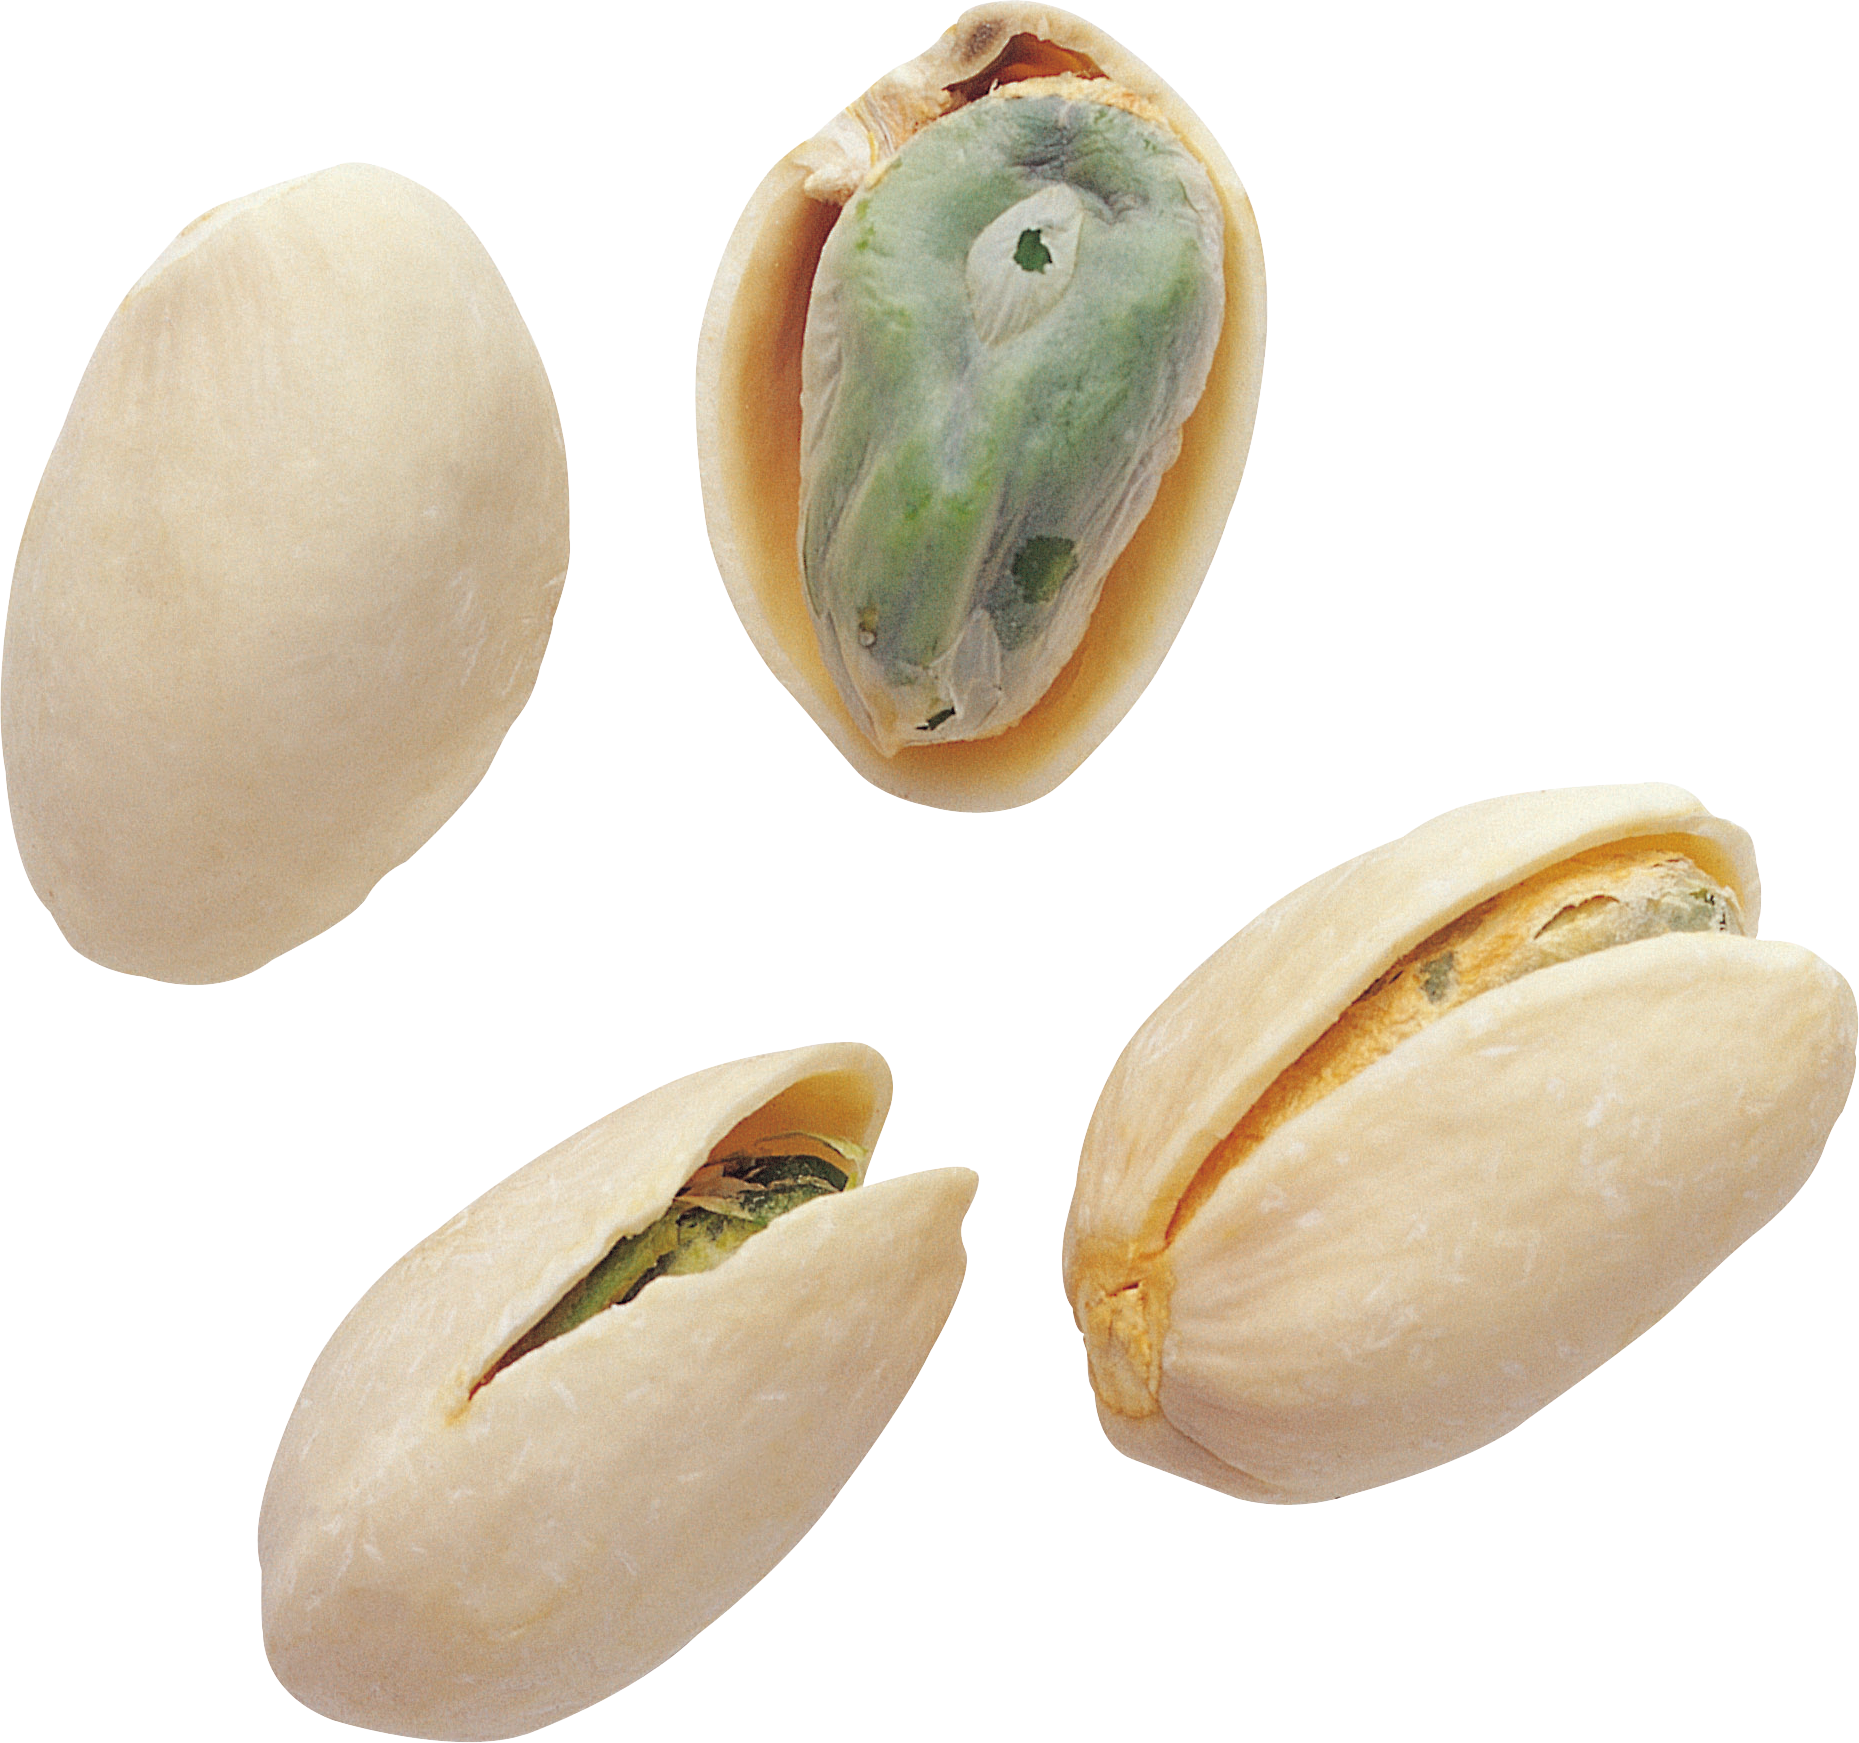 nut clipart pistachio nut